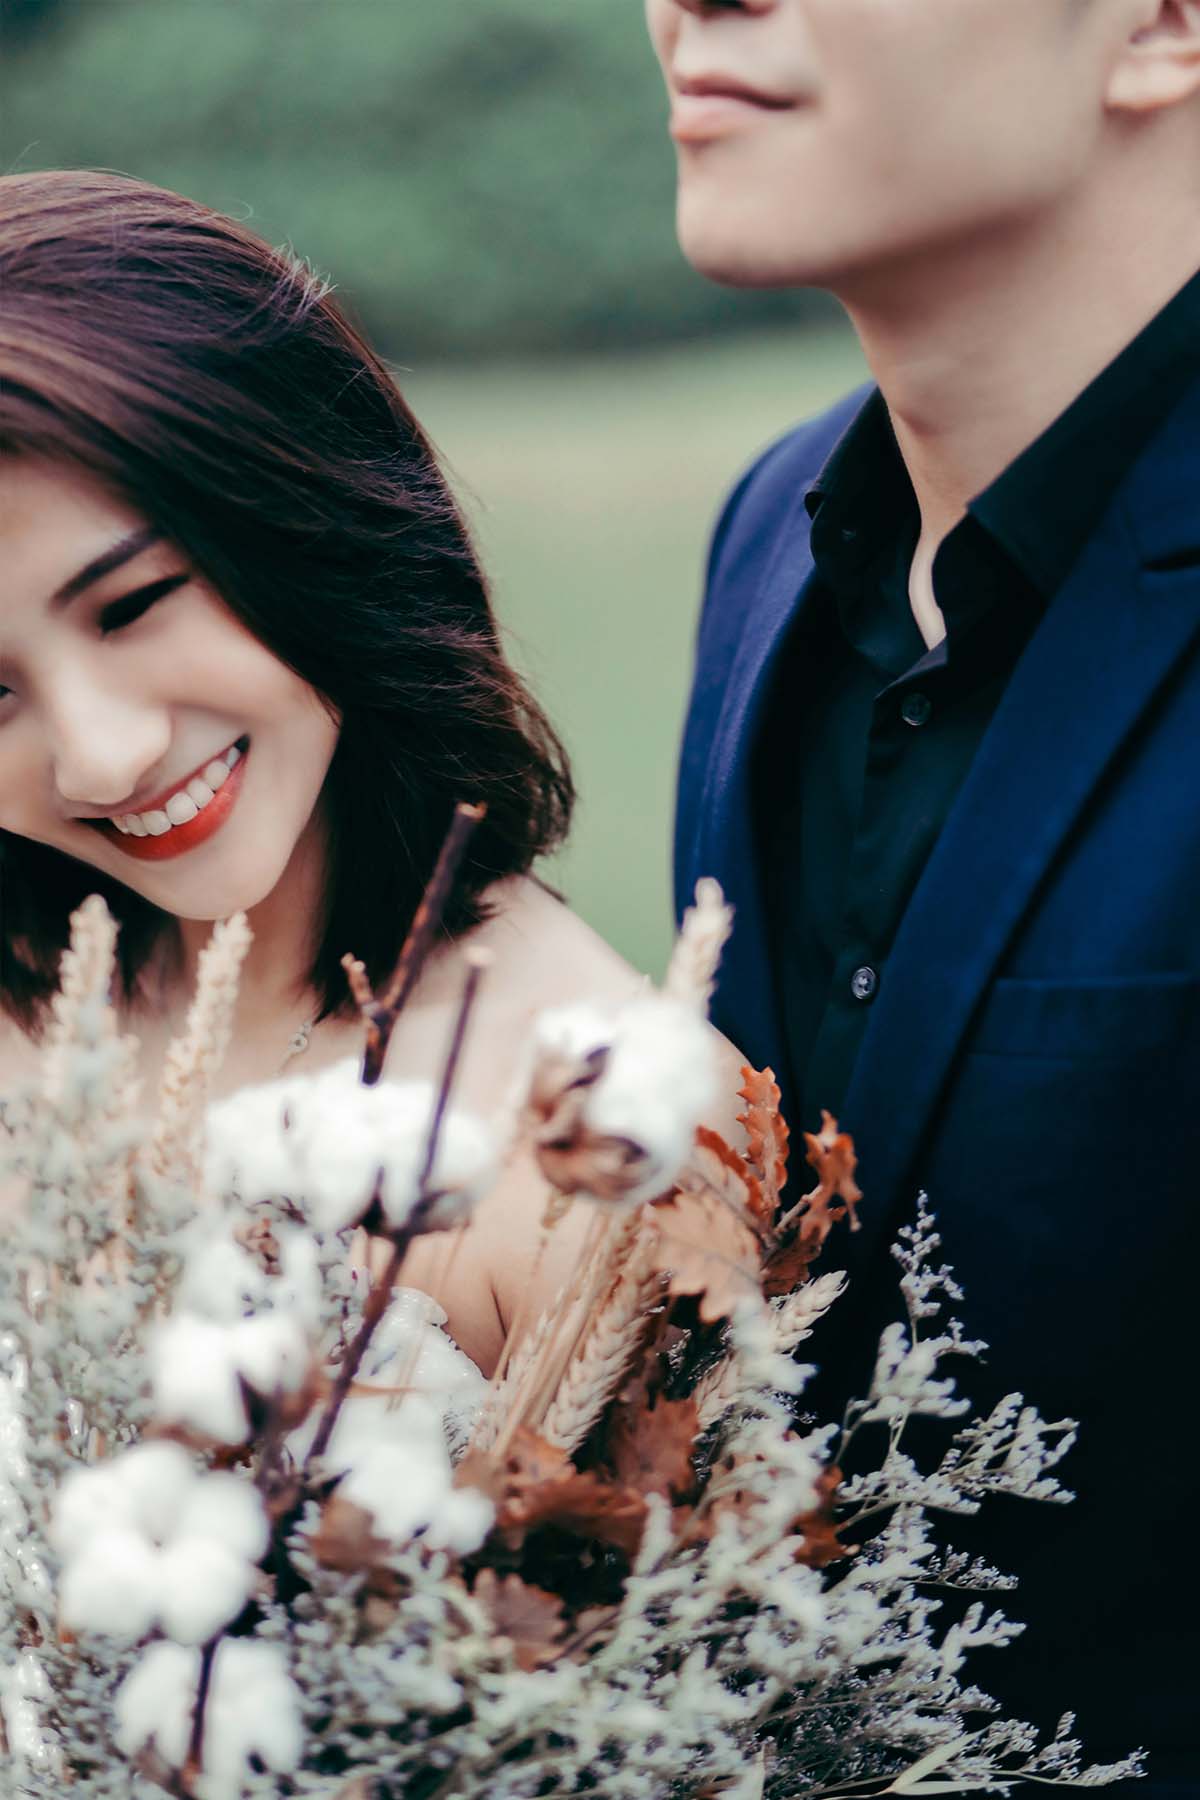 Pre-Wedding | Outdoor SG | 01 By Zwedding & Chris Lin